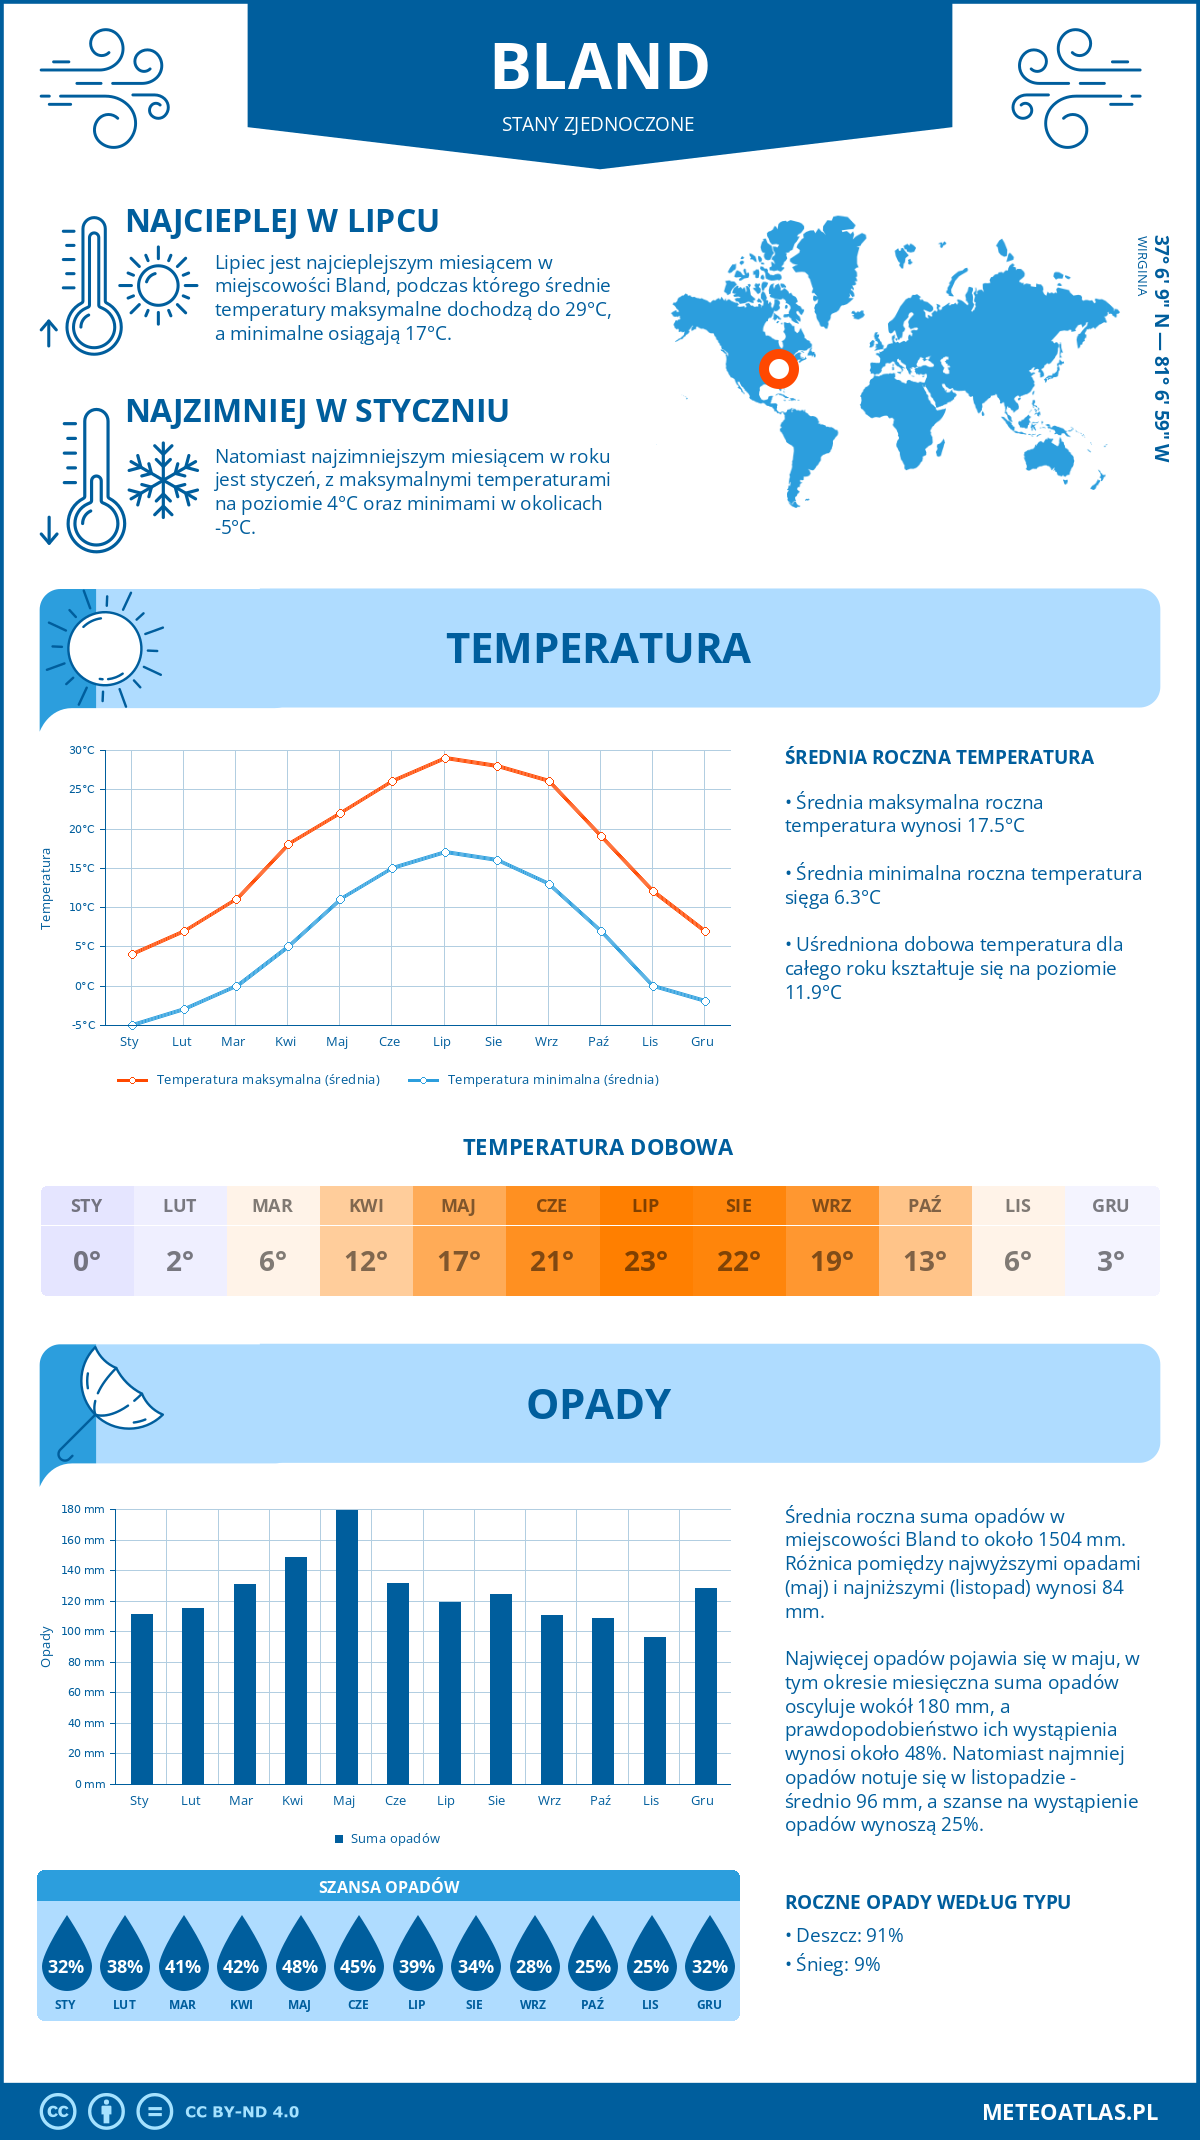 Pogoda Bland (Stany Zjednoczone). Temperatura oraz opady.